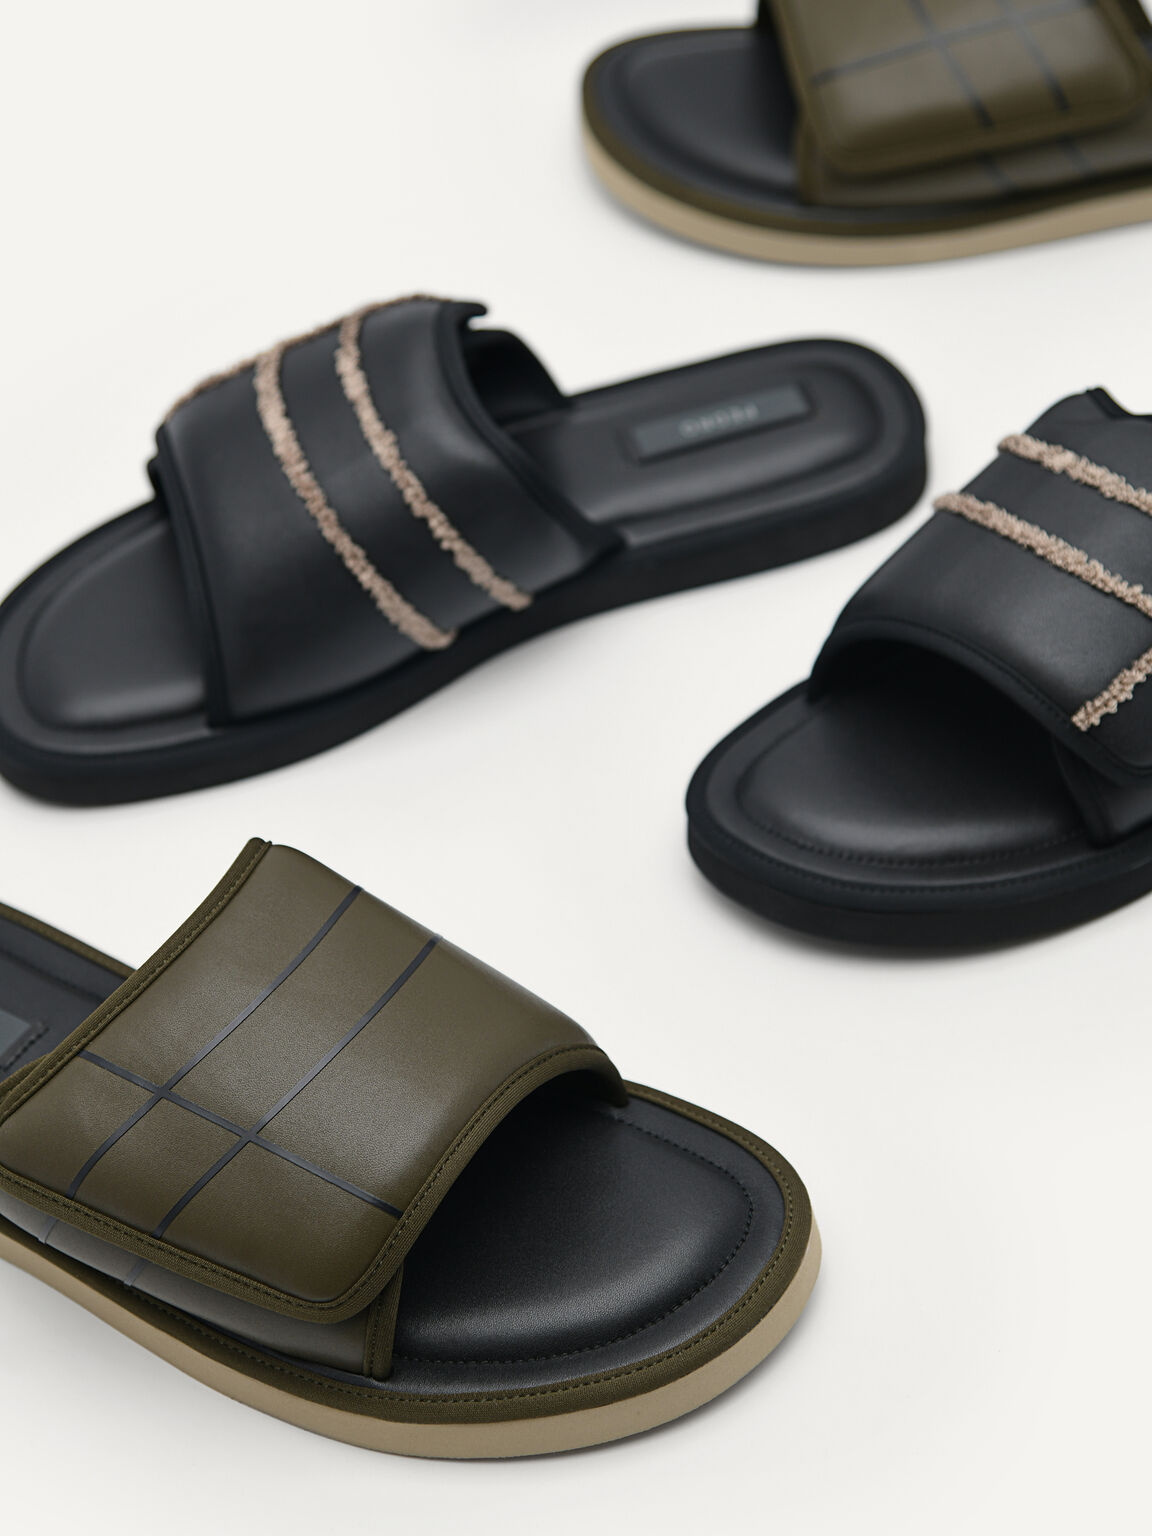 Microfiber Slide Sandals, Black